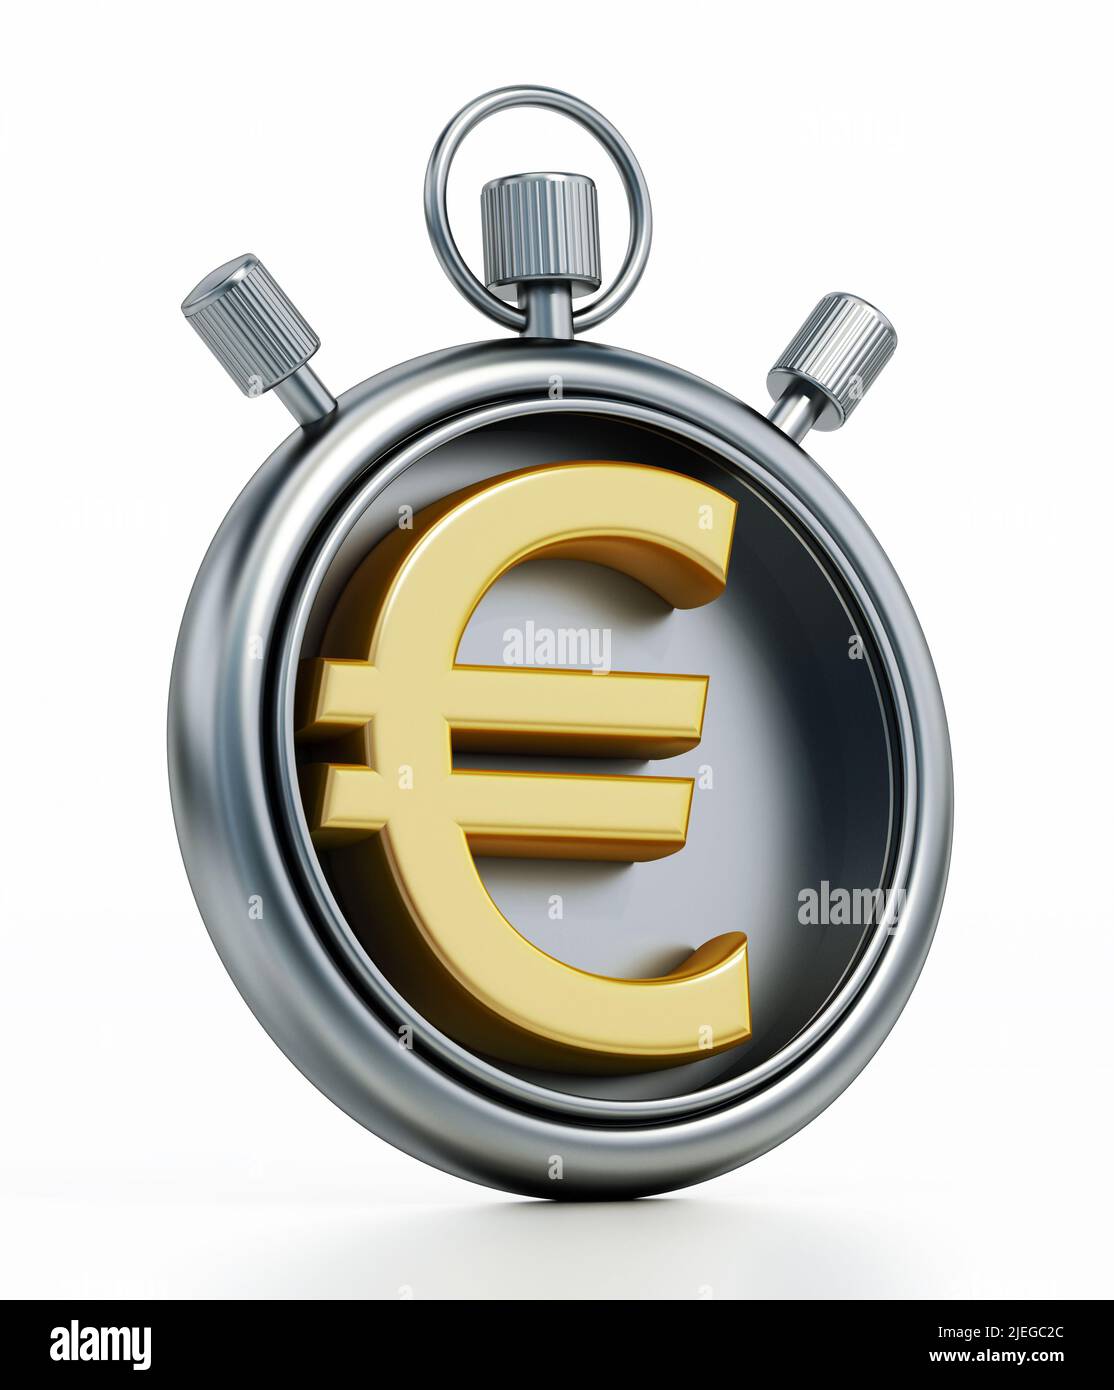 Euro symbol inside chronometer isolated on white background. 3D illustration. Stock Photo